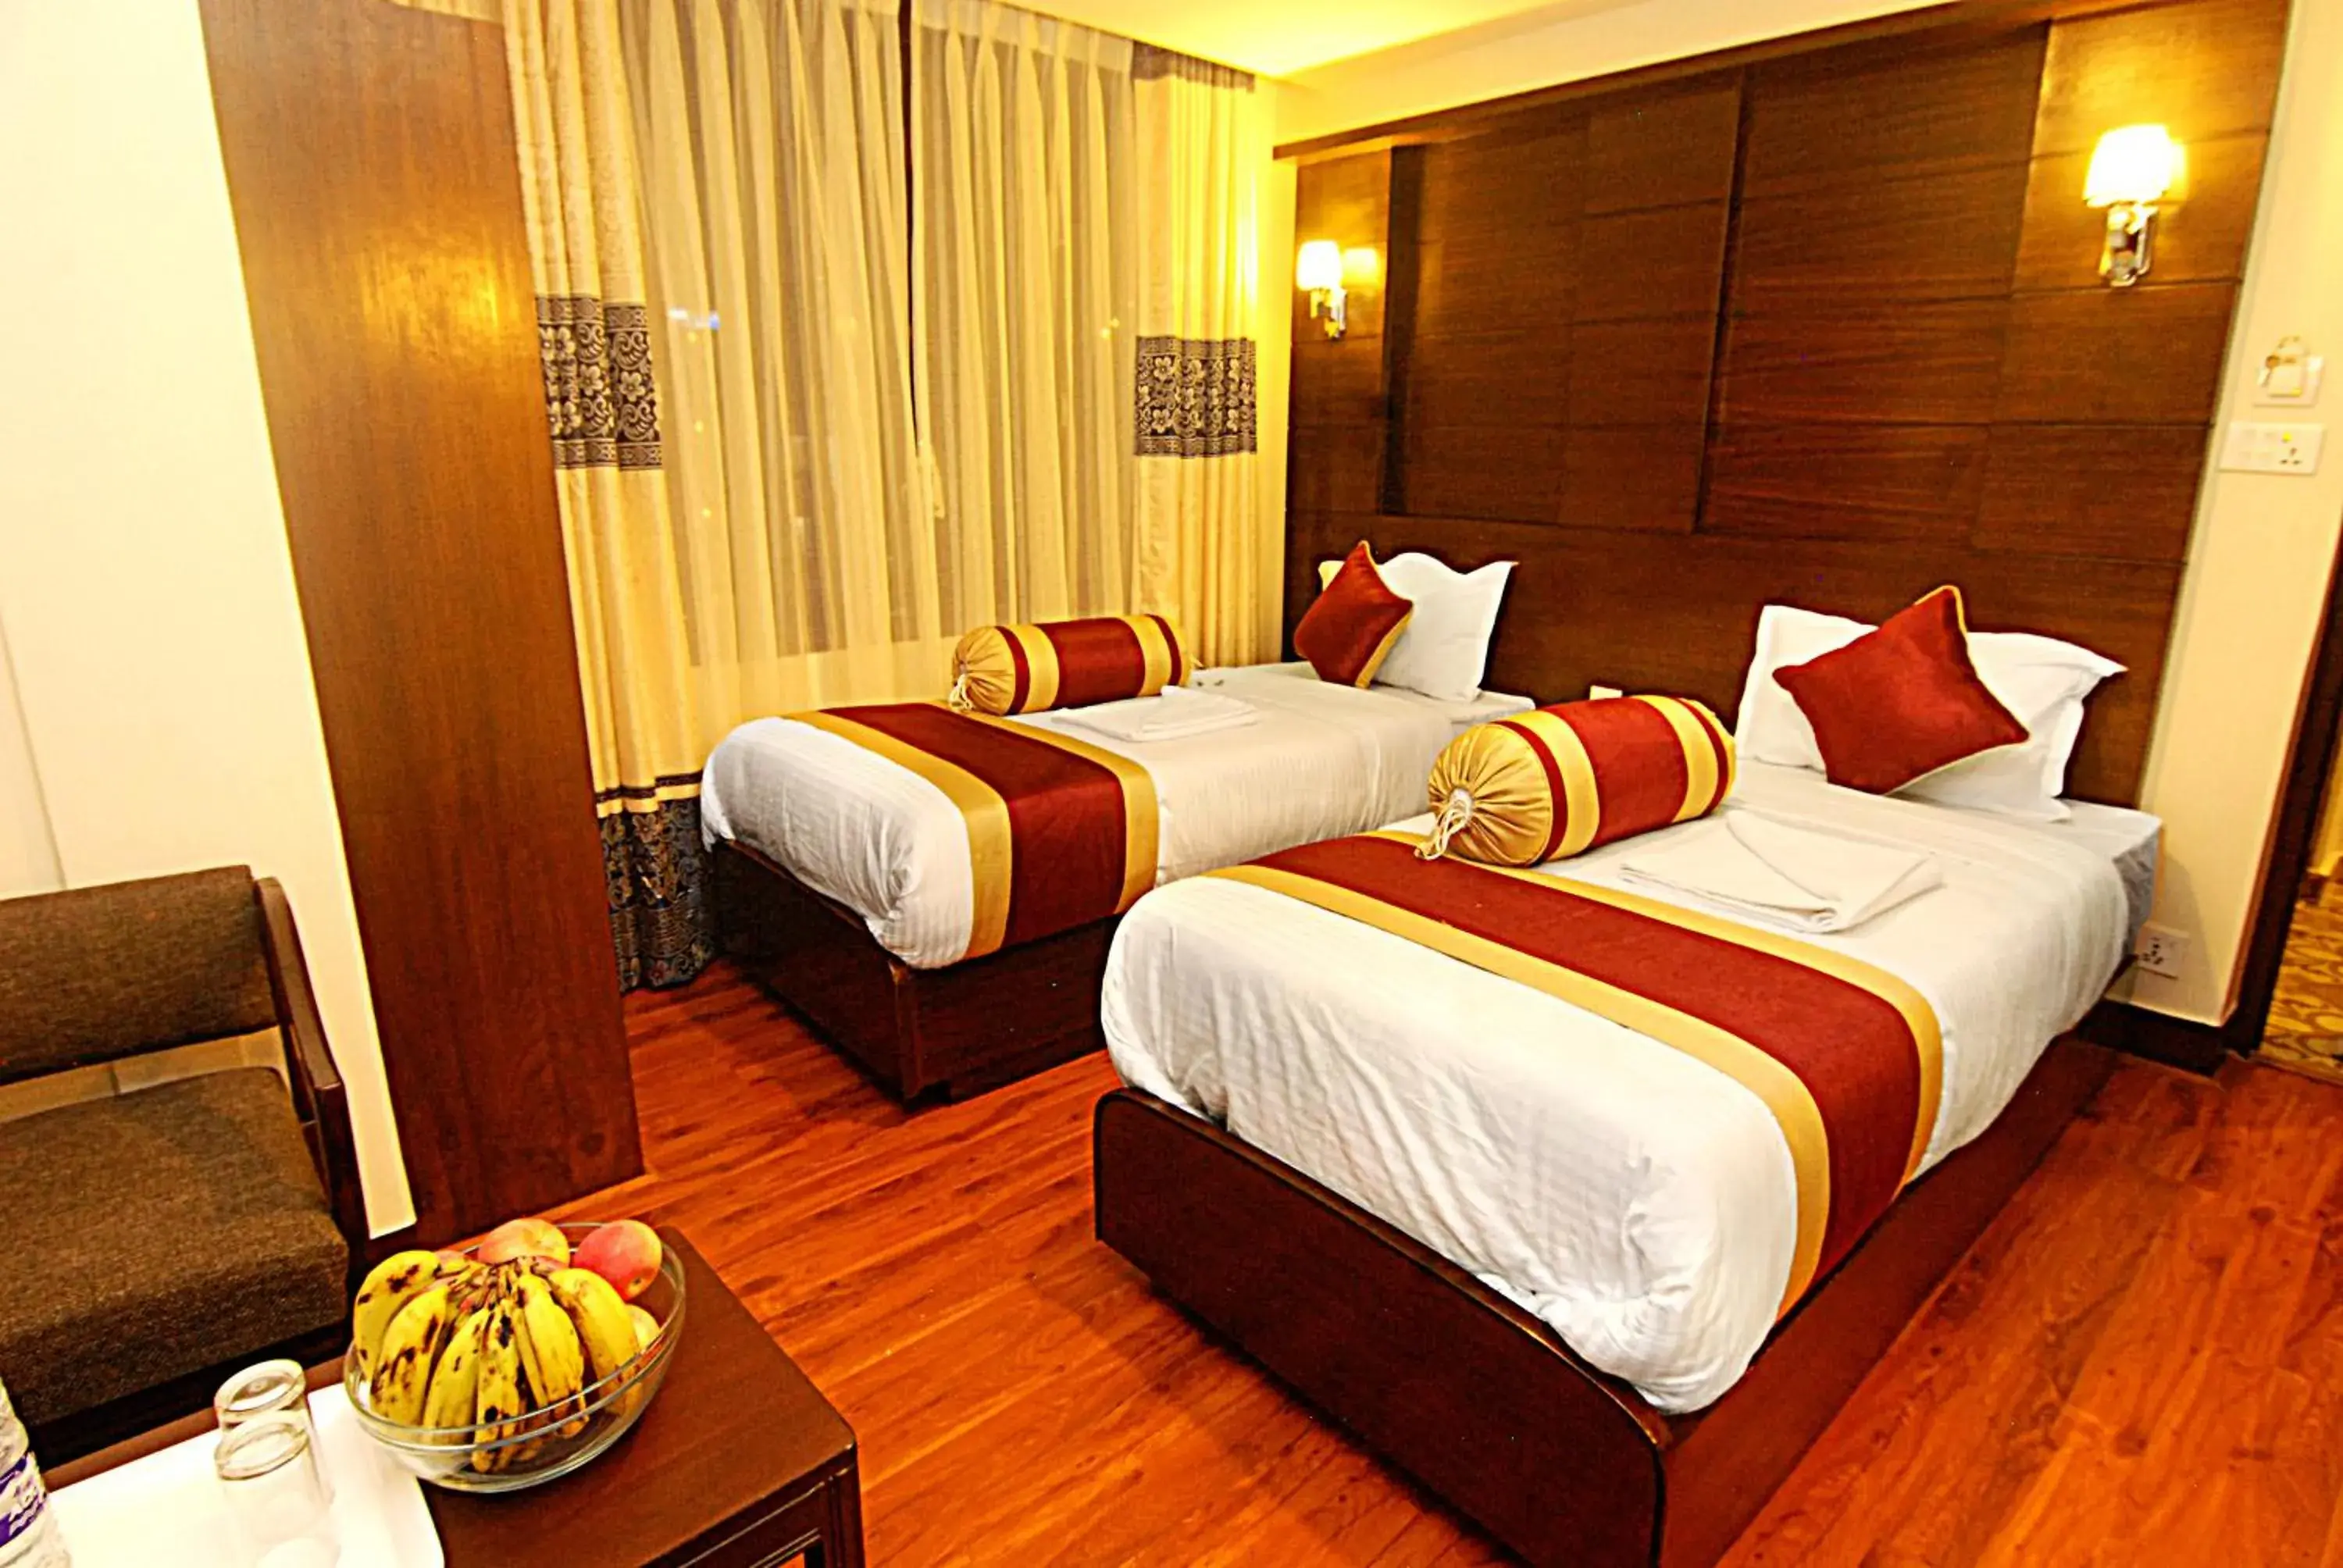 Bedroom, Room Photo in Hotel Buddha